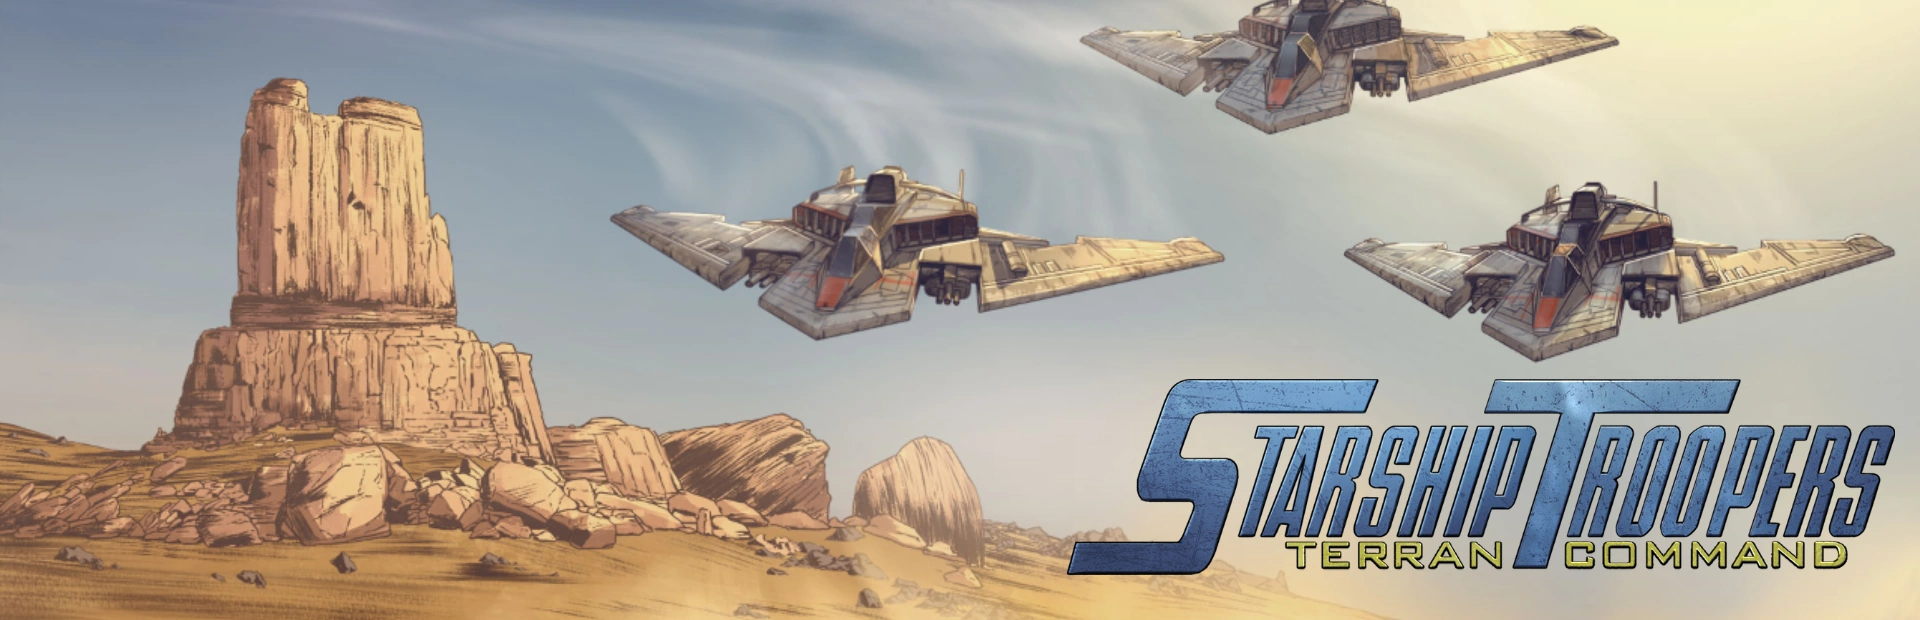 دانلود بازی Starship Troopers Terran برای کامپیوتر | گیمباتو